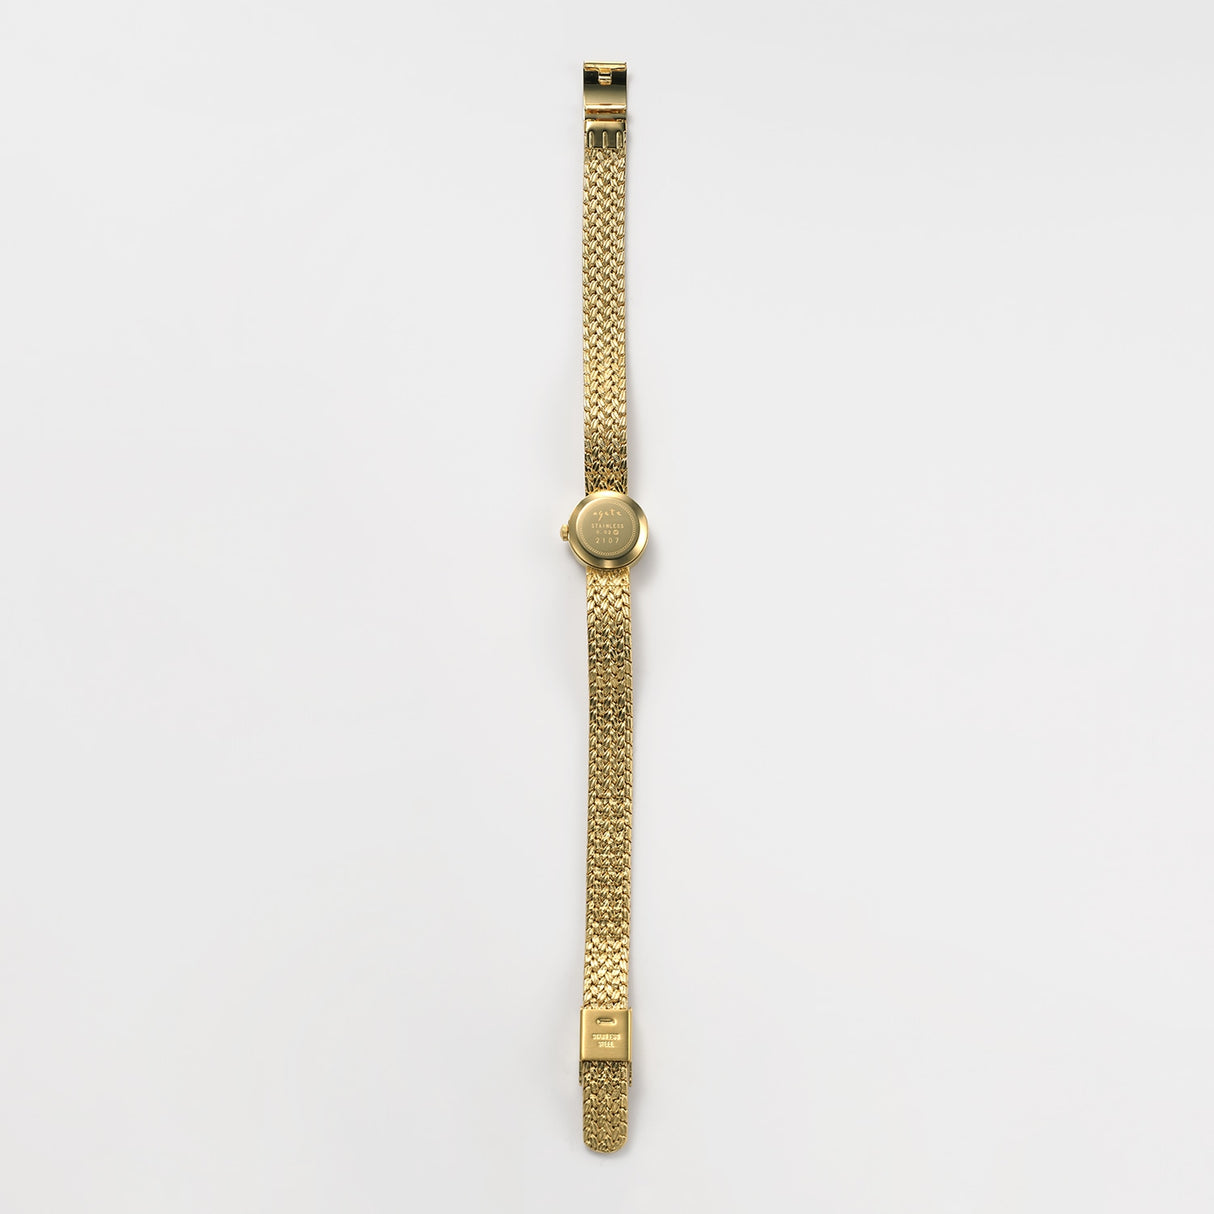 日本 agete阿卡朵 典藏款 圆形钻石表盘 精工机芯 防水镀金 手表